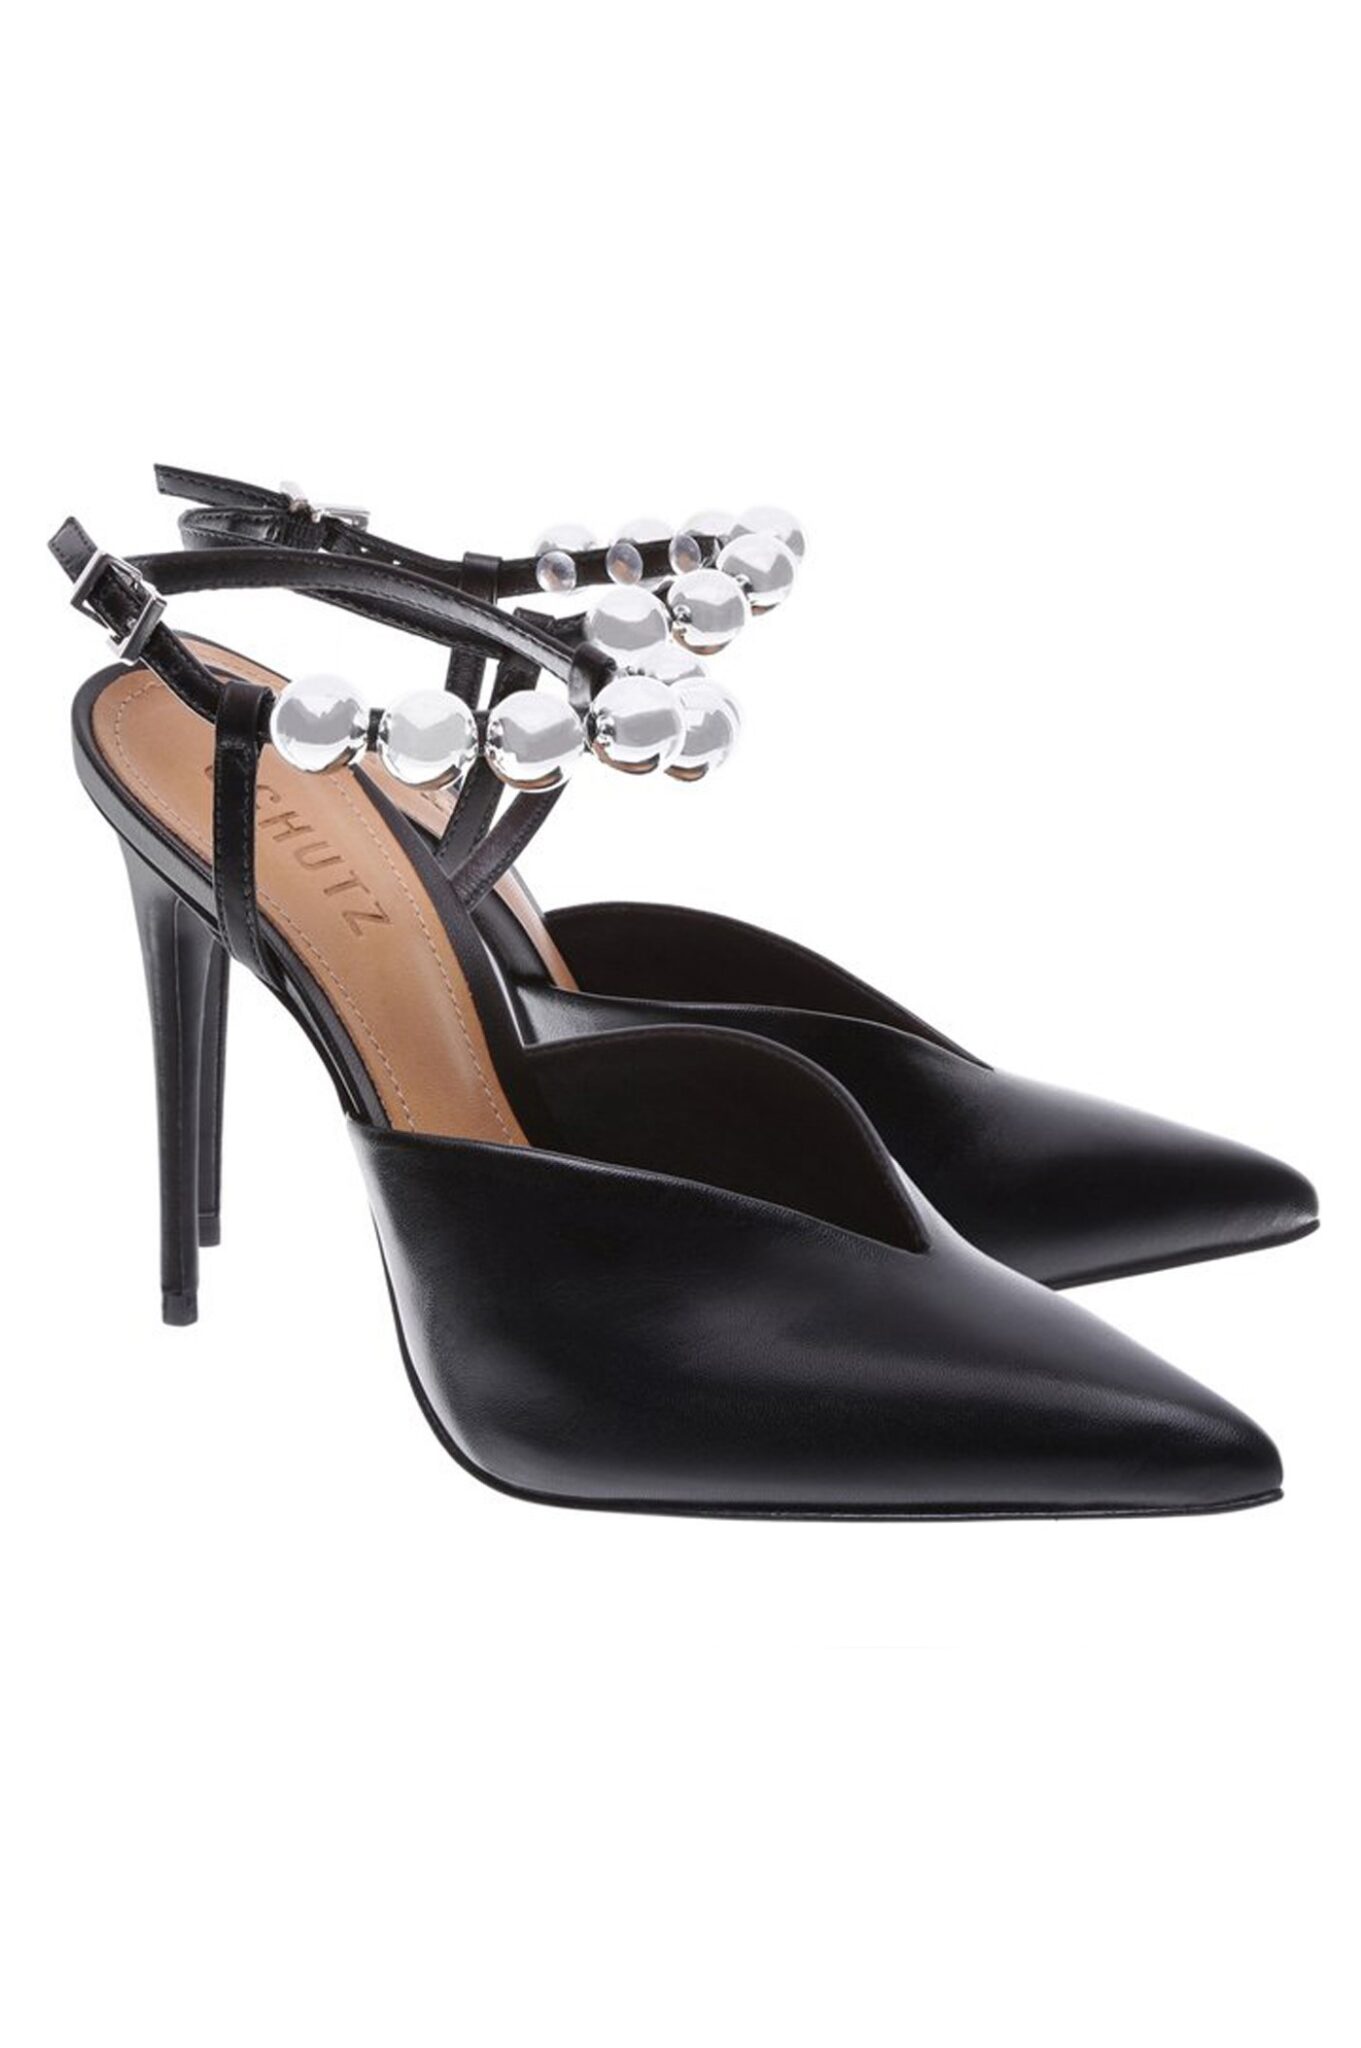 Pantofi stiletto din piele neagră cu aplicații argintii - SCHUTZ